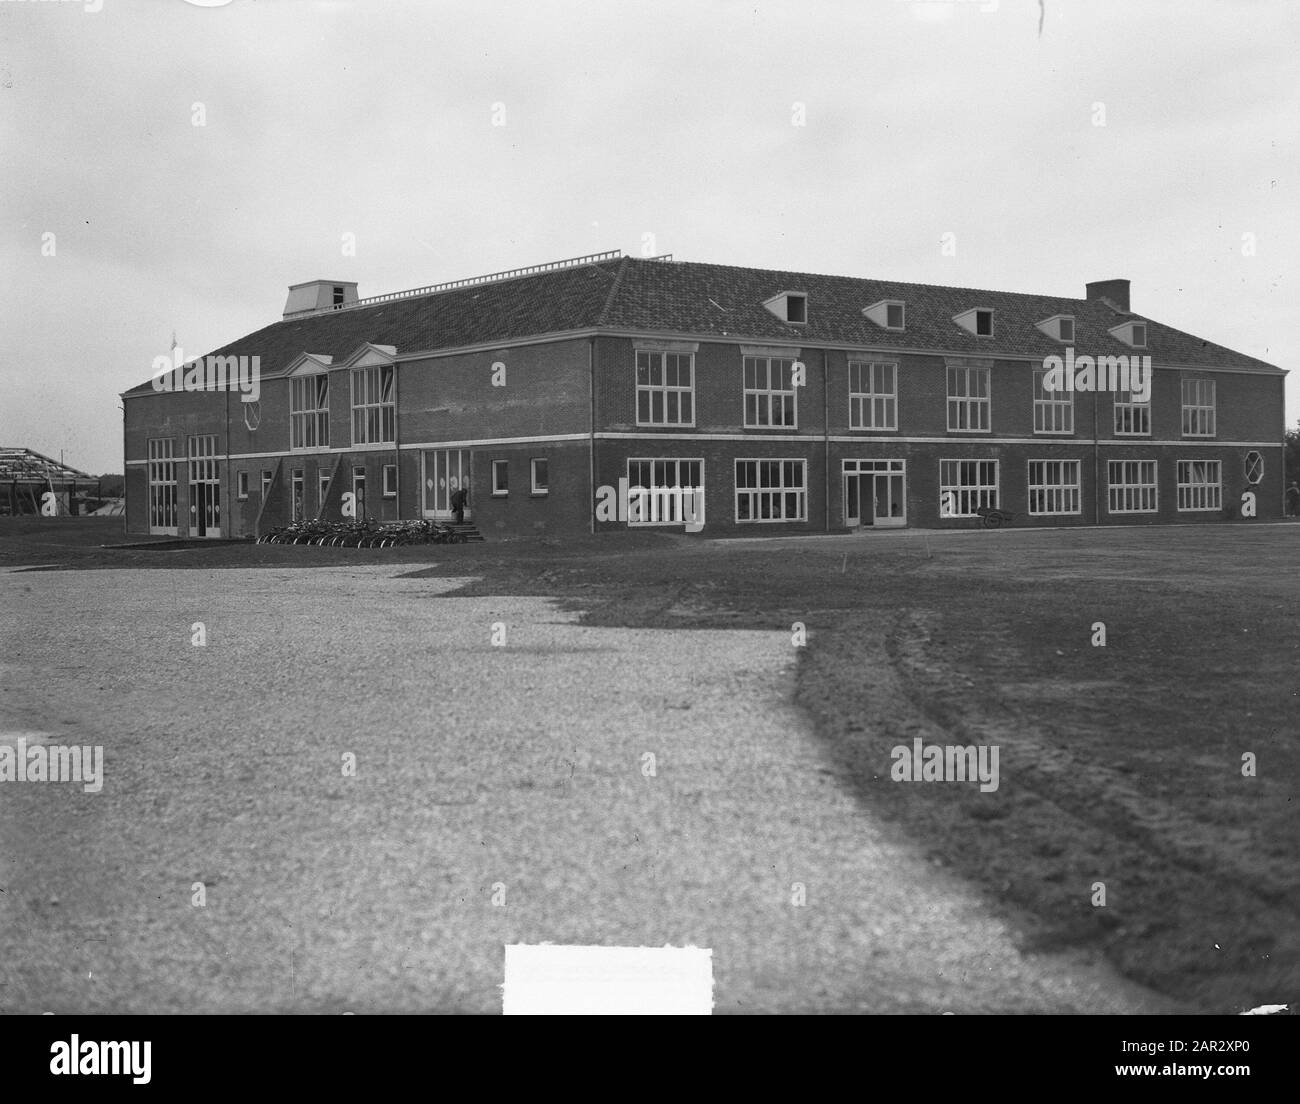 New school building Kees Boeke? Date: 12 September 1950 Keywords: school buildings Stock Photo